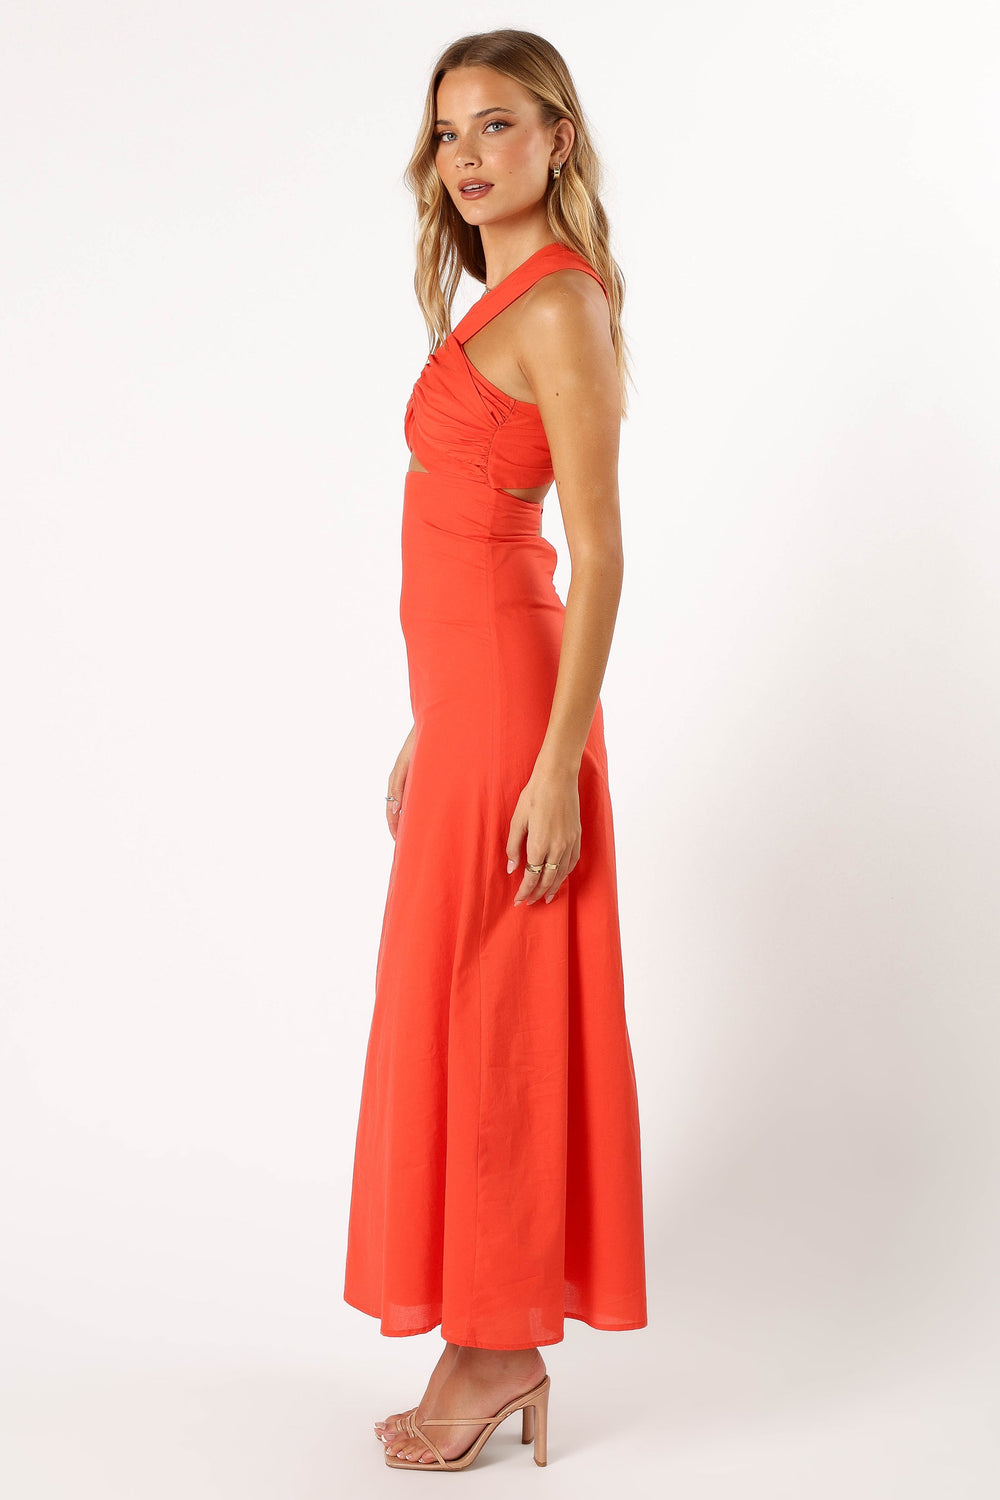 Shop Formal Dress - Luna One Shoulder Maxi Dress - Tangerine sixth image